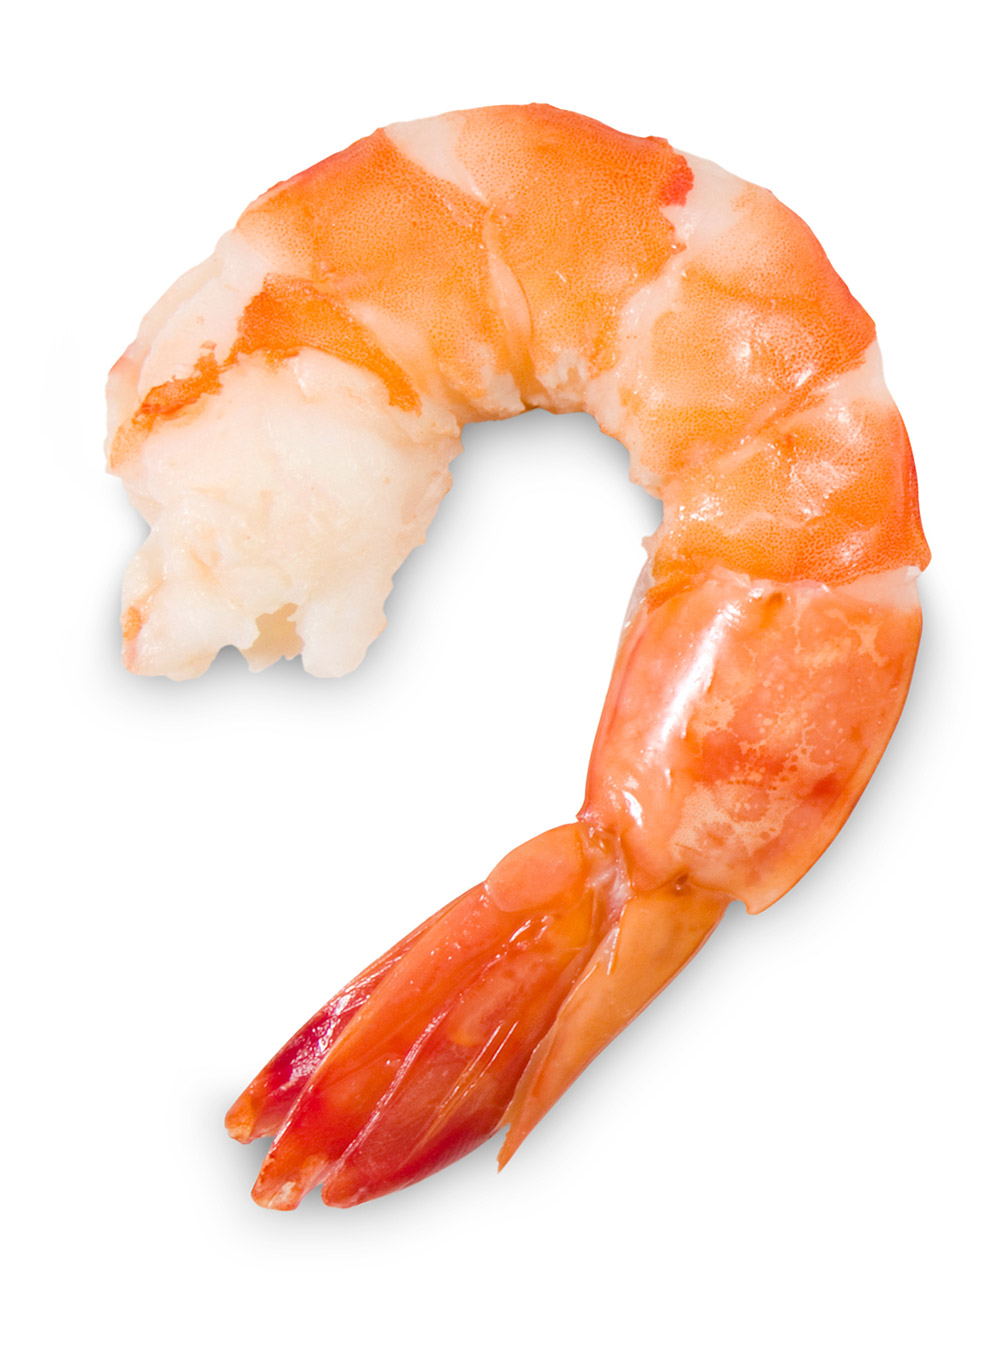 Braised Shrimp (or Crawfish)